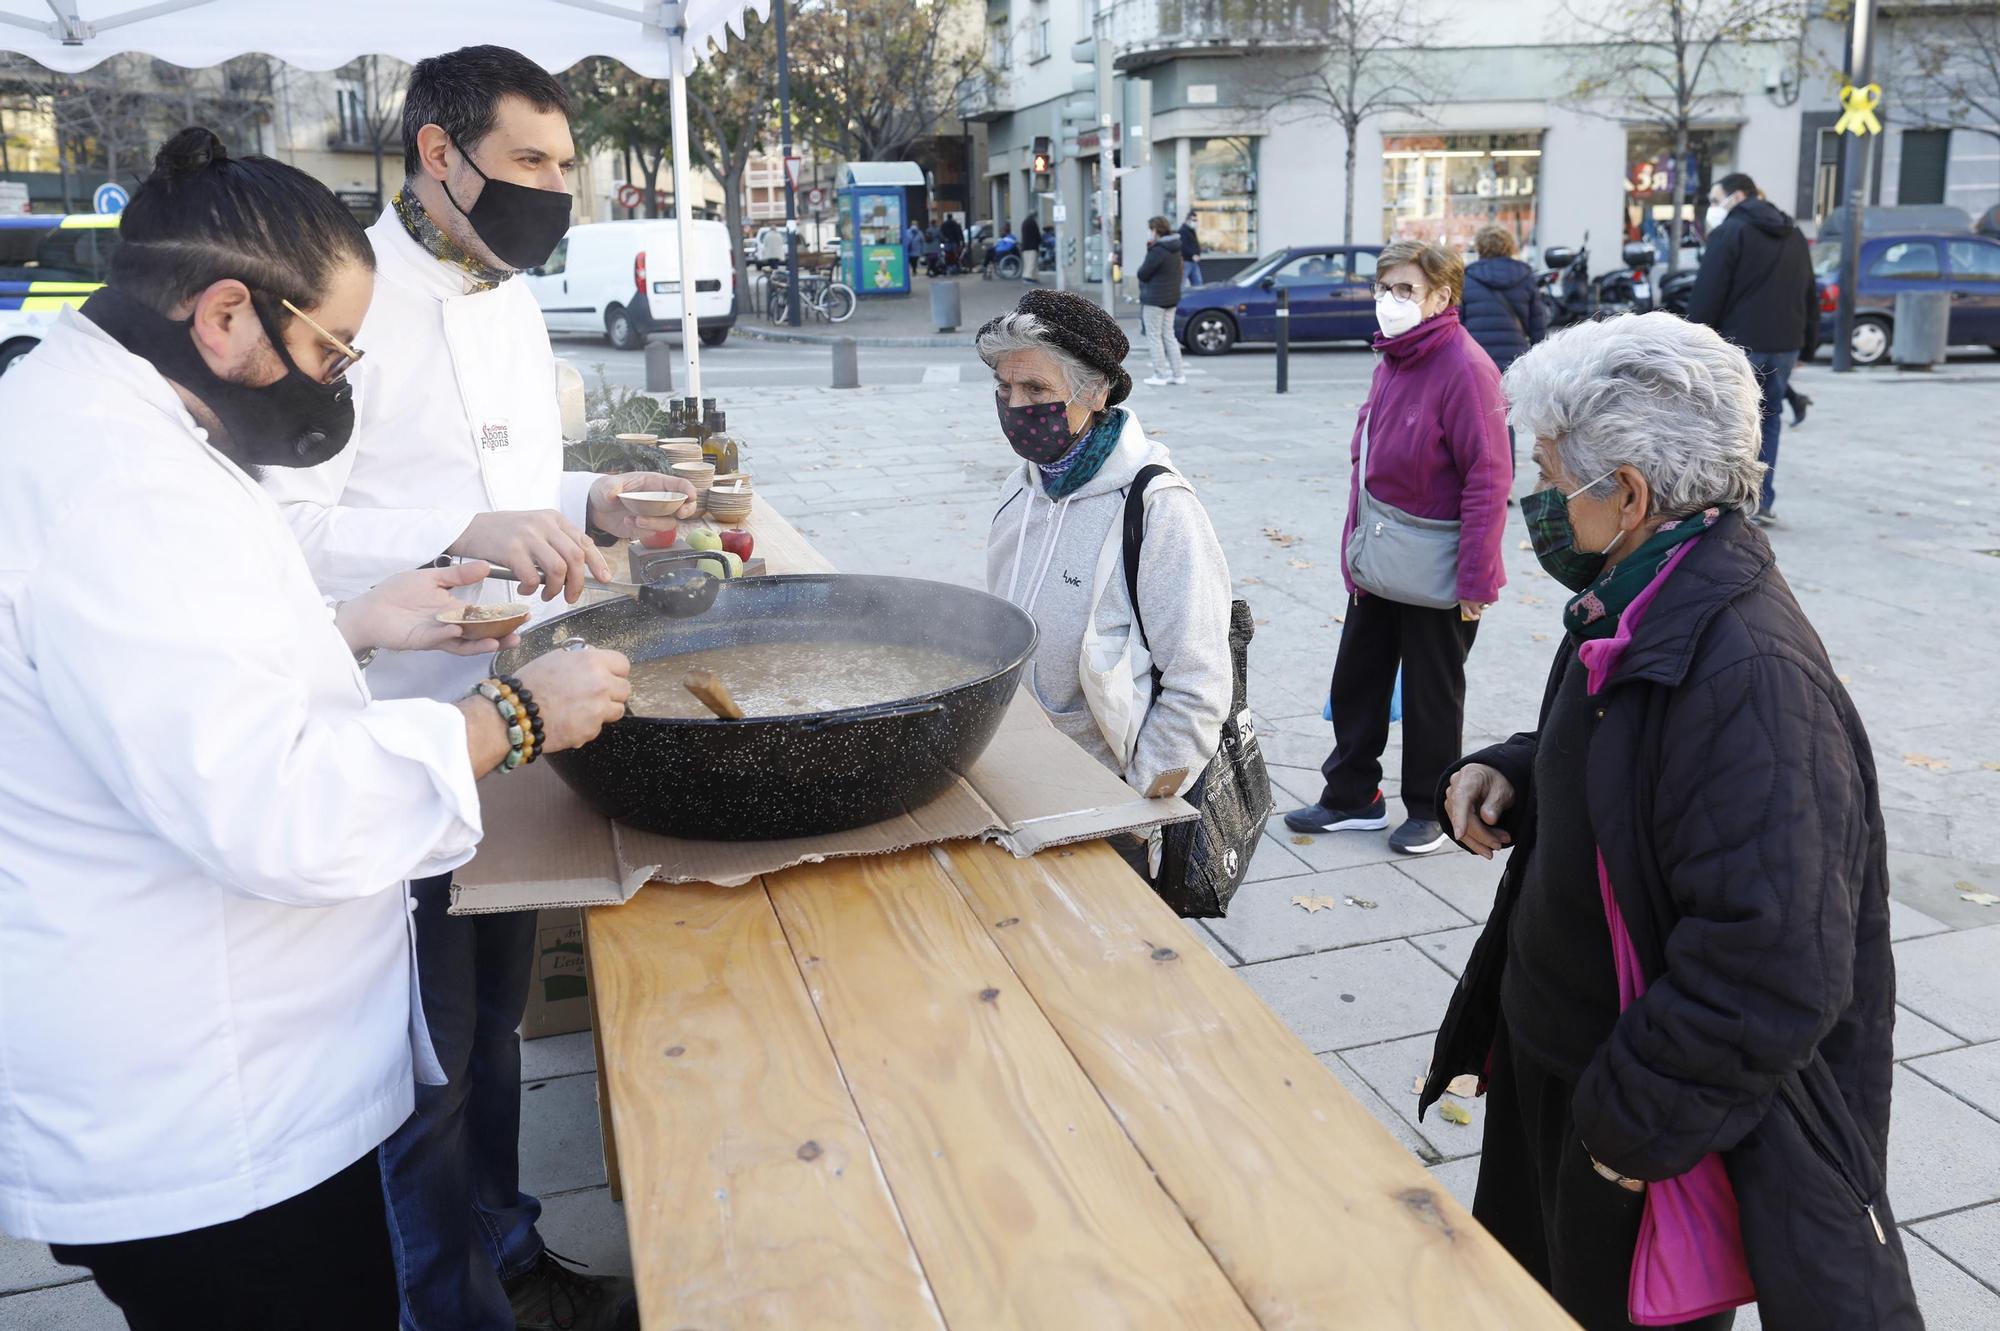 Comencen les jornades de l'arròs de Girona